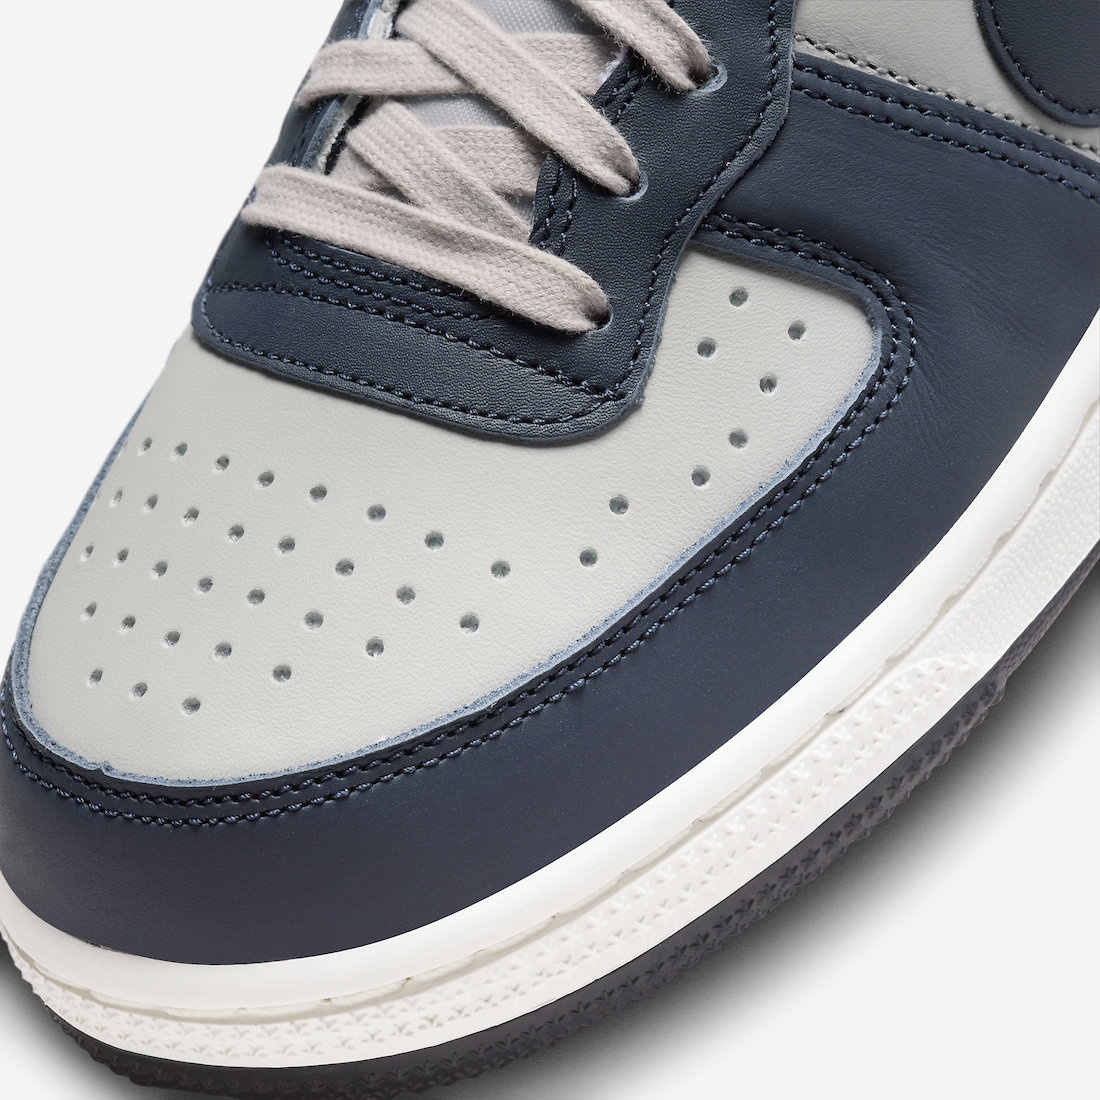 Nike Terminator Low Georgetown FN6830-001 Release Date | SneakerFiles